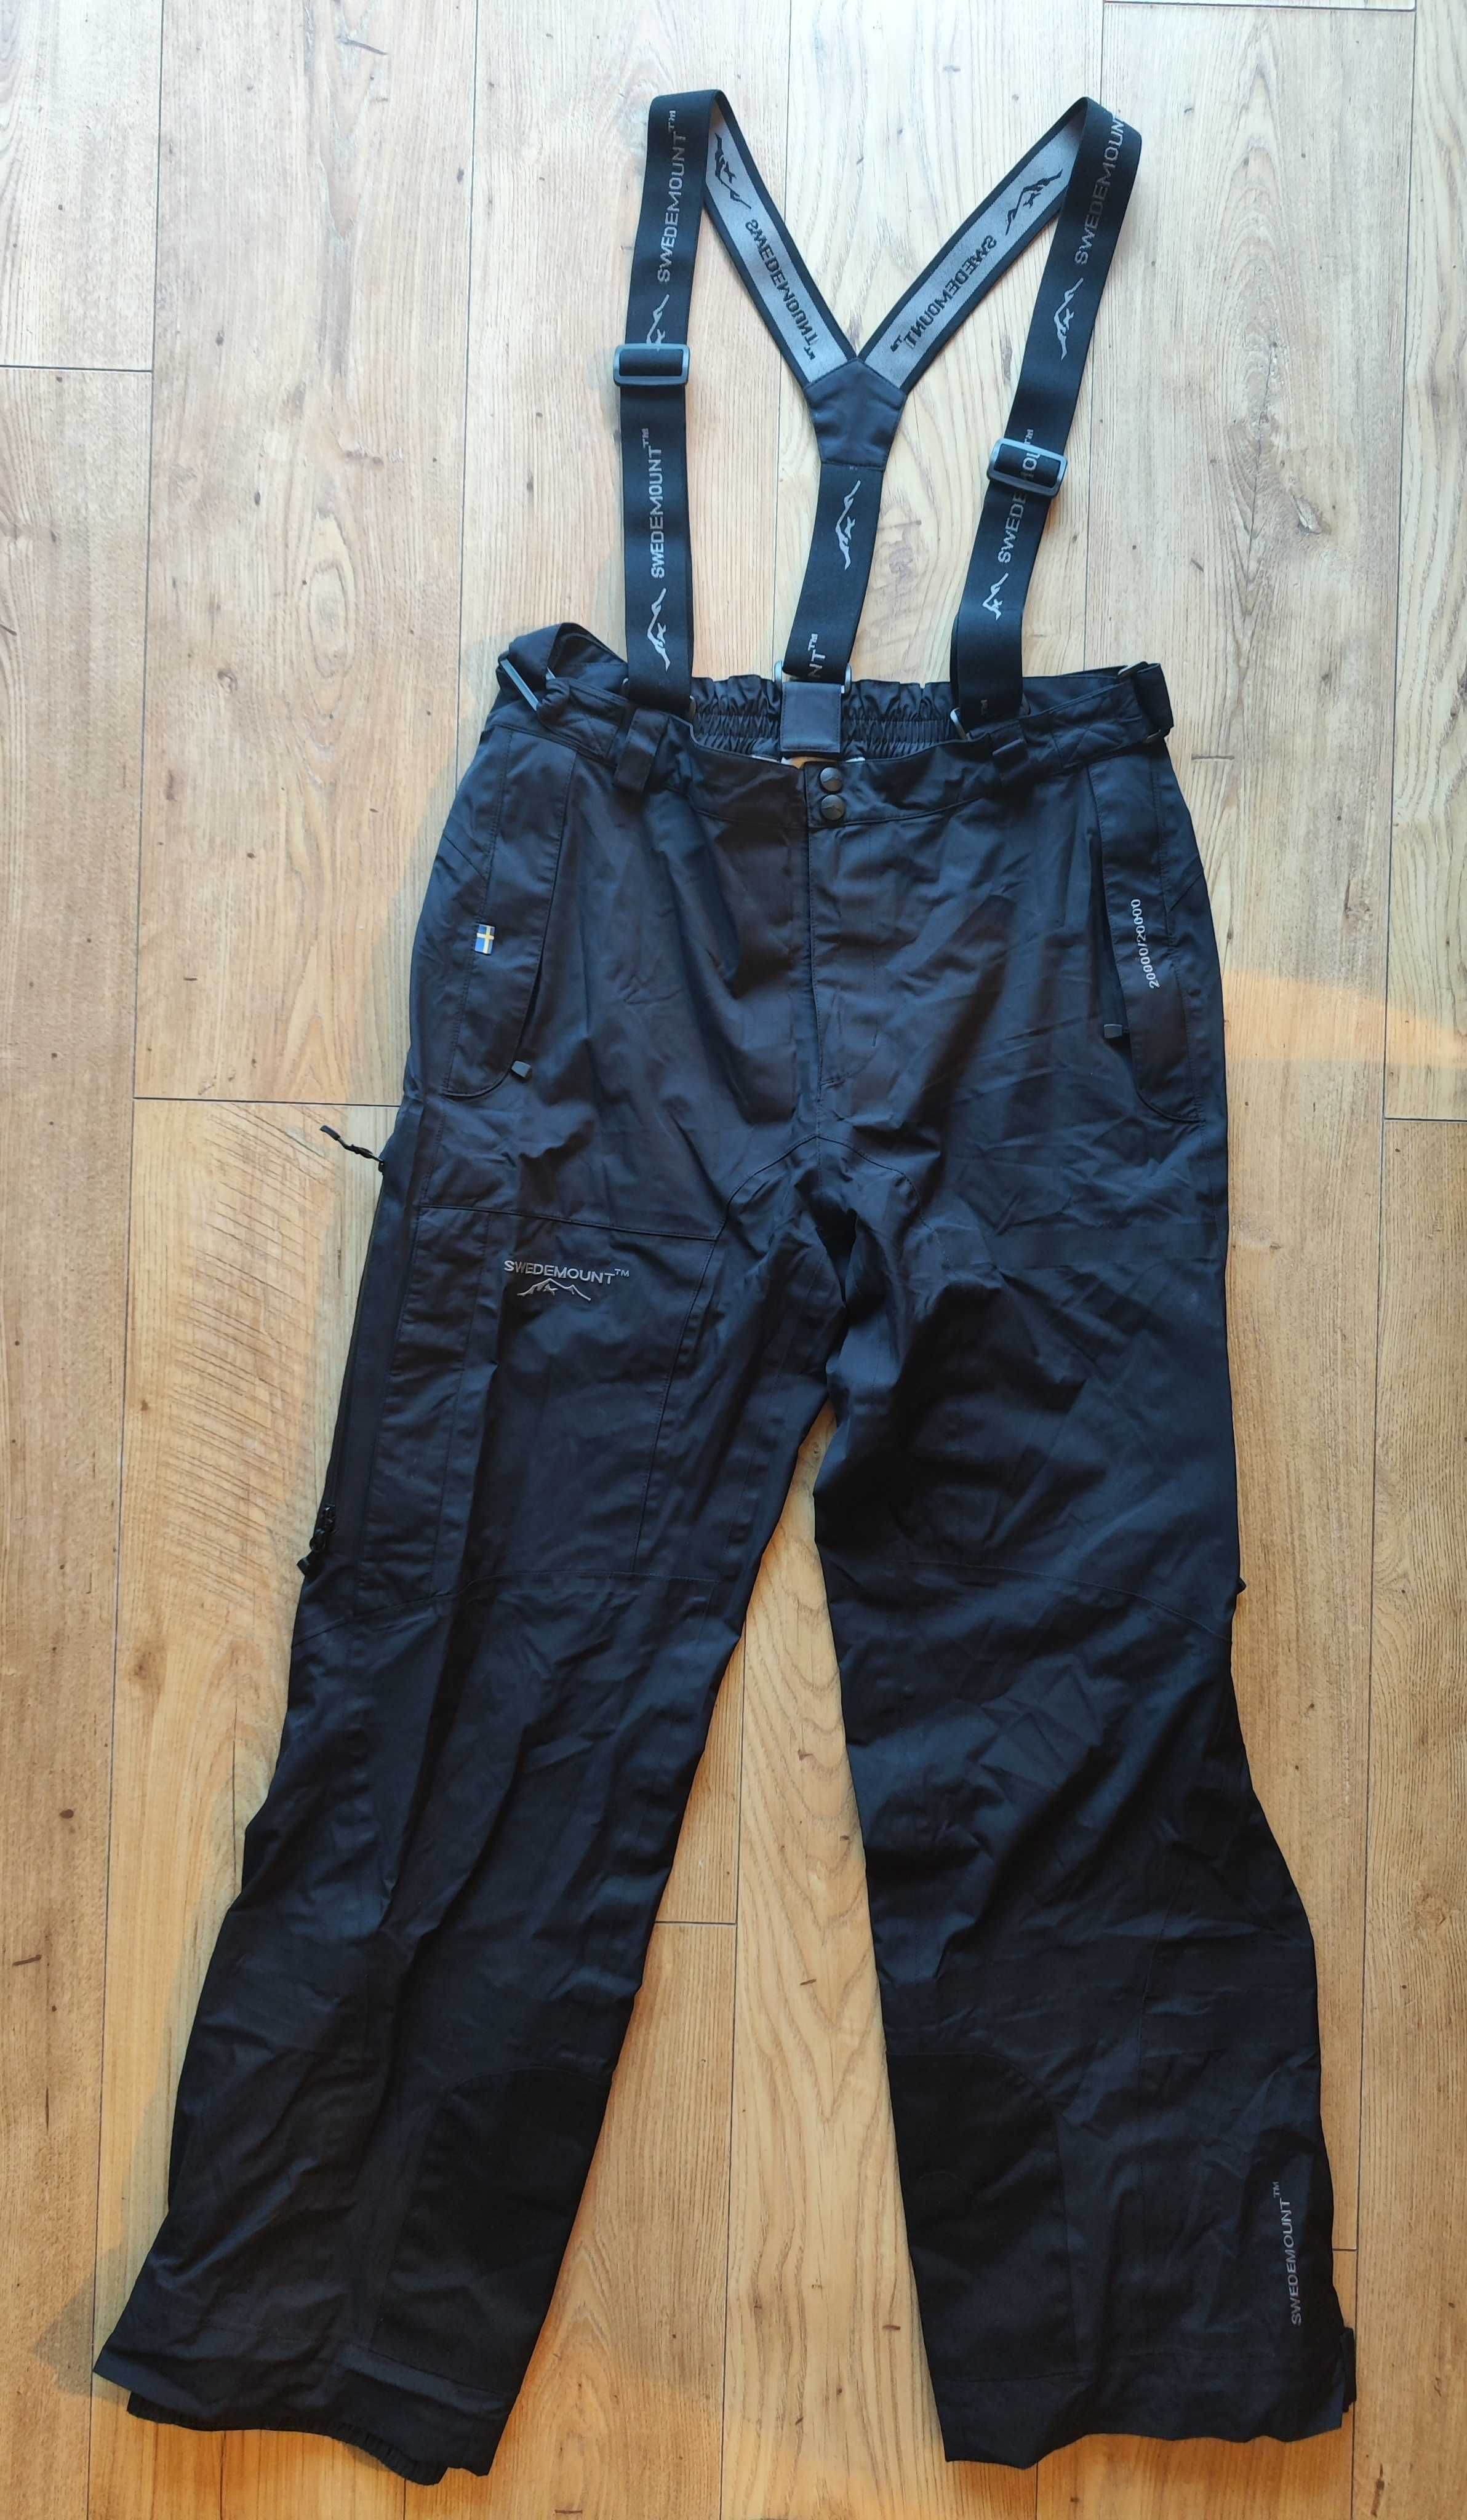 Spodnie membranowe Swedemount STX 3L męskie czarne górskie narciarskie